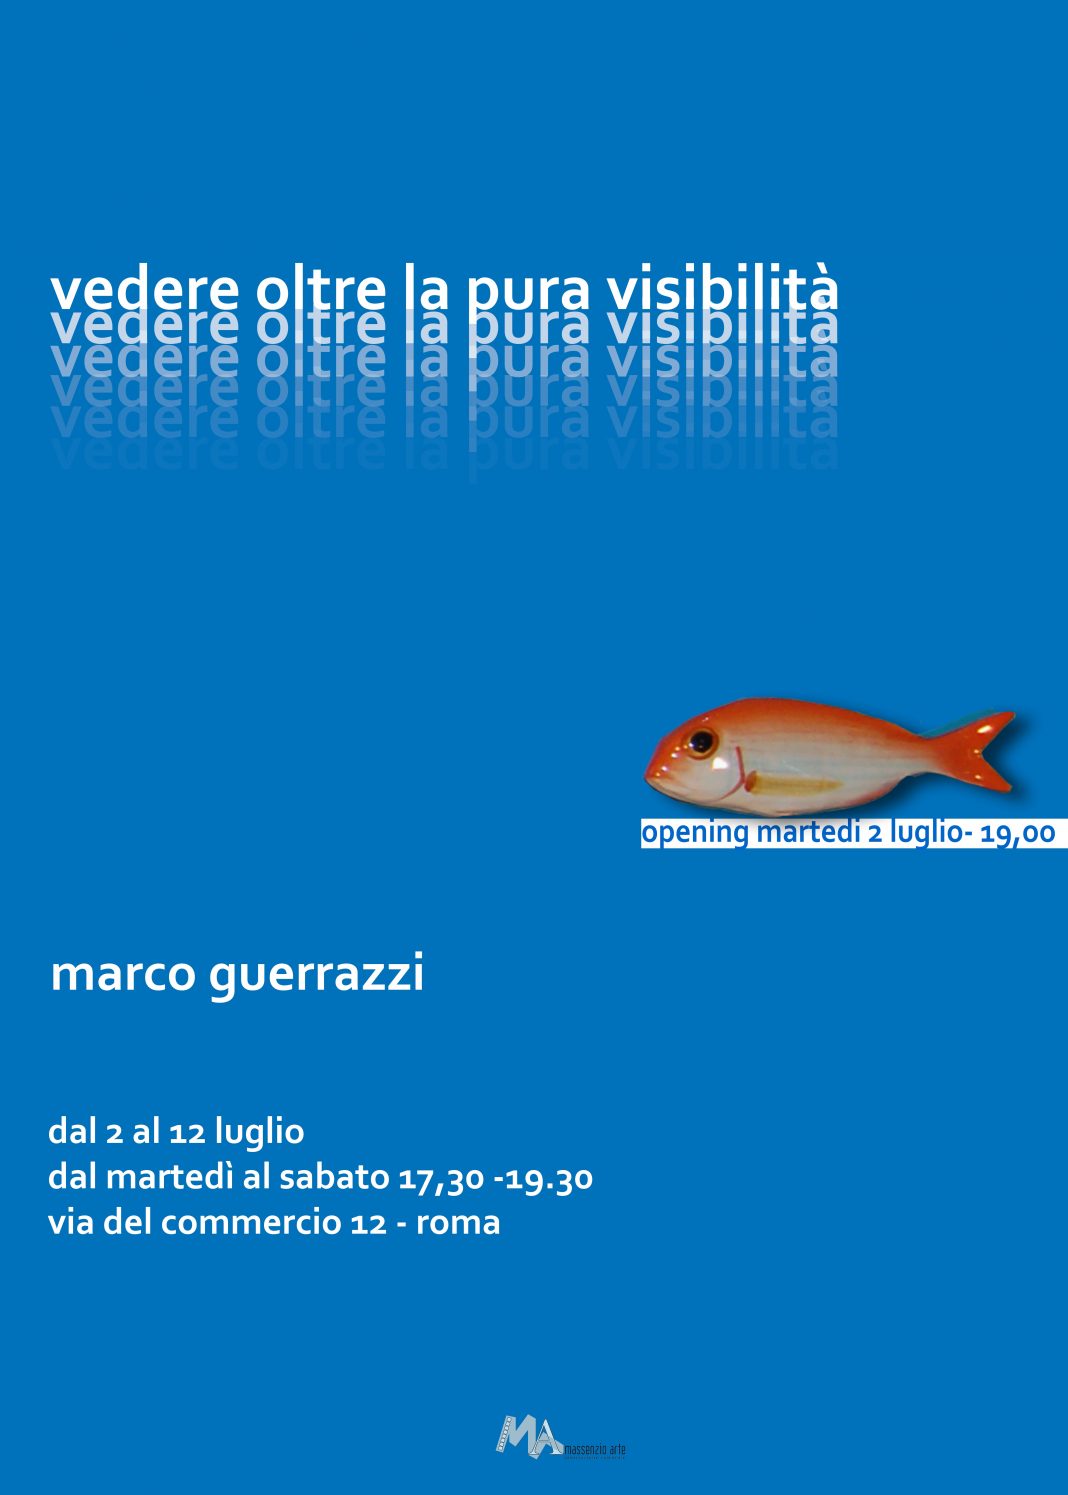 Marco Guerrazzi – Vedere oltre la pura visibilitàhttps://www.exibart.com/repository/media/eventi/2013/06/marco-guerrazzi-8211-vedere-oltre-la-pura-visibilità-1068x1495.jpg